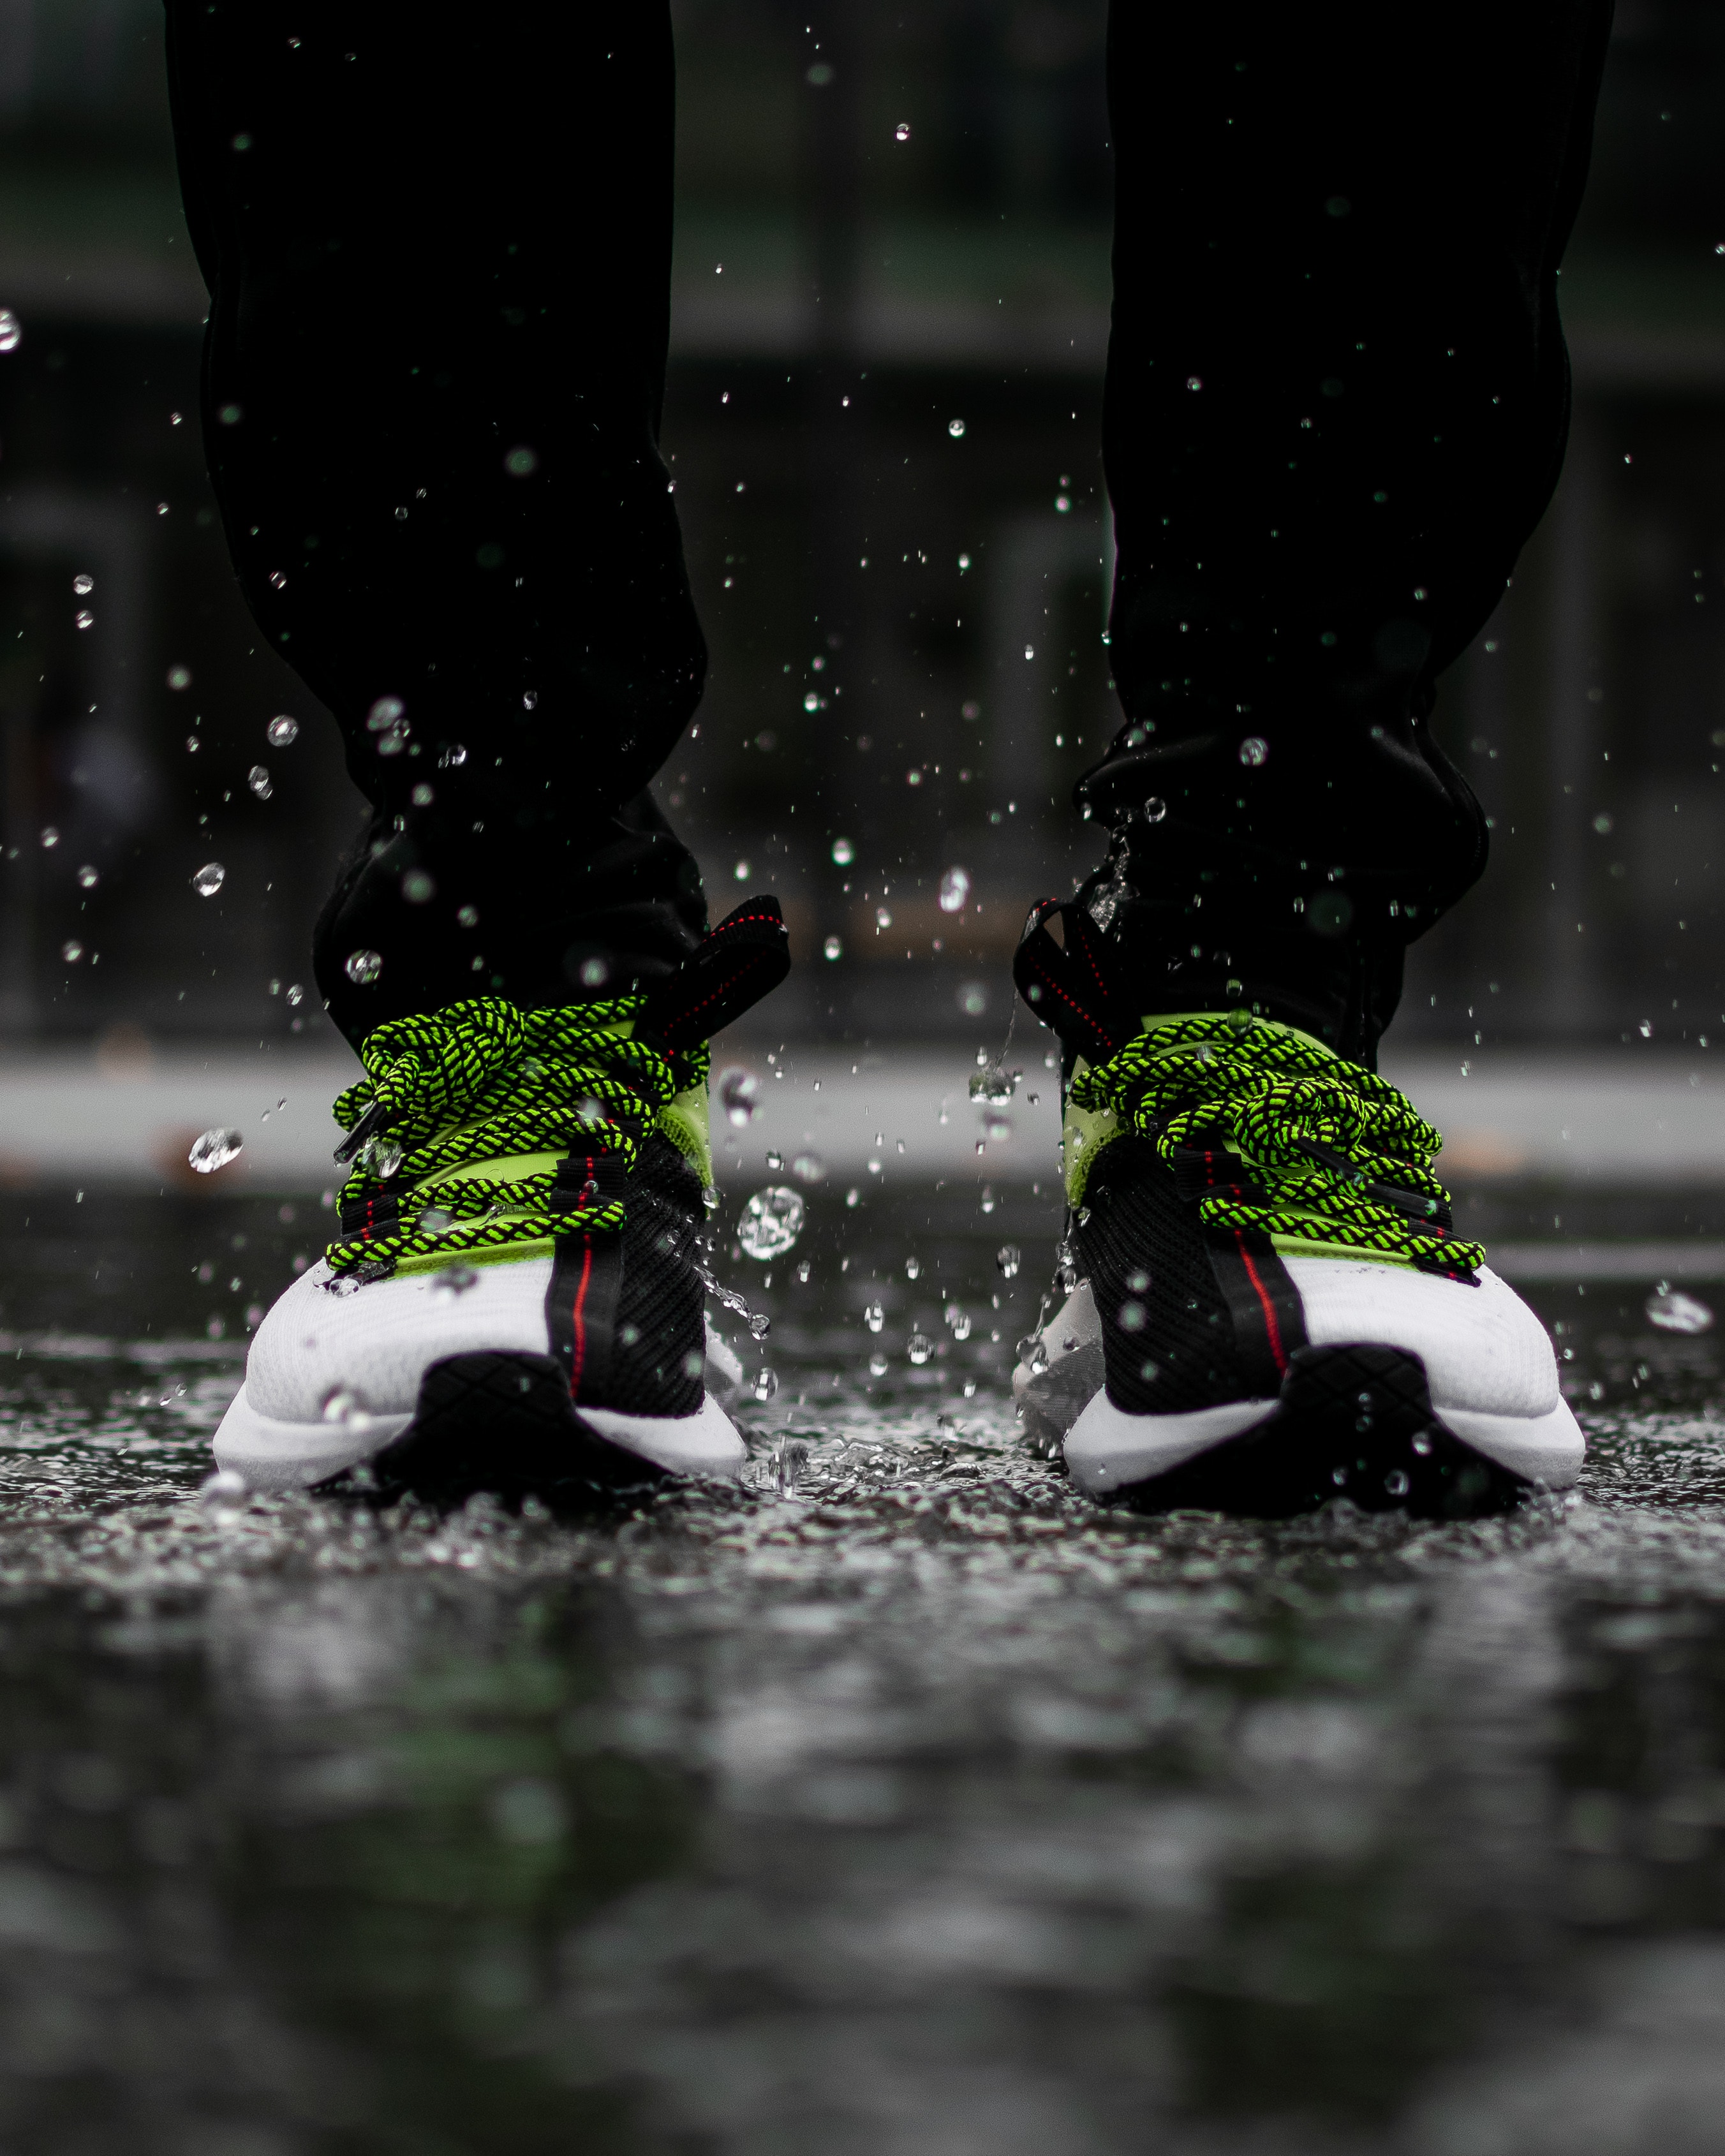 Free HD spray, rain, miscellanea, miscellaneous, legs, sneakers, footwear